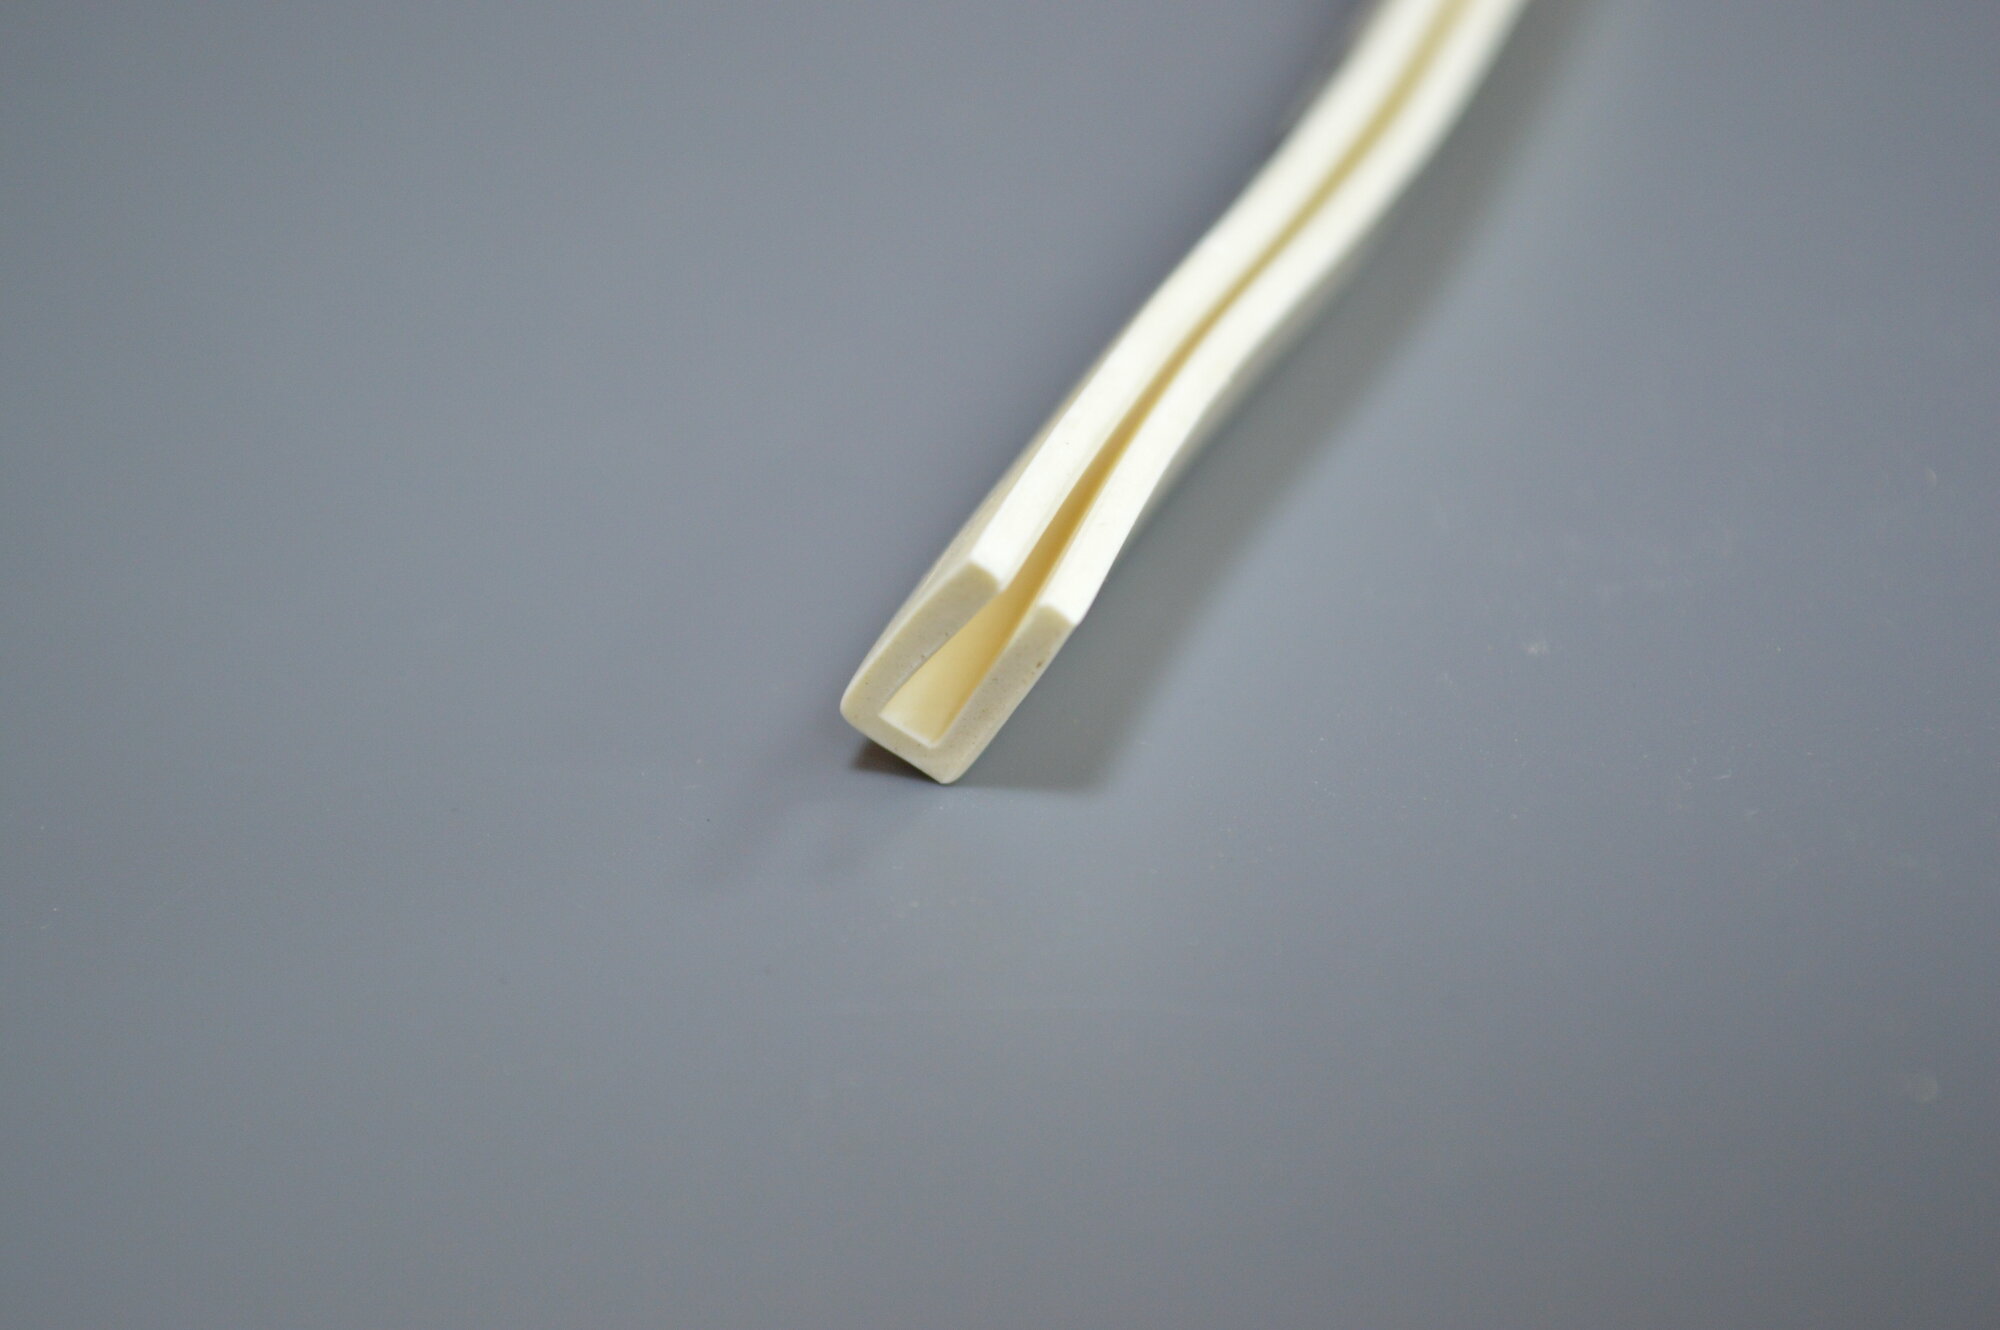 Профиль из силиконовой резины П-образный для уплотнения стекол и метала. Толщина стекла 5 мм. Длина 2 метра.